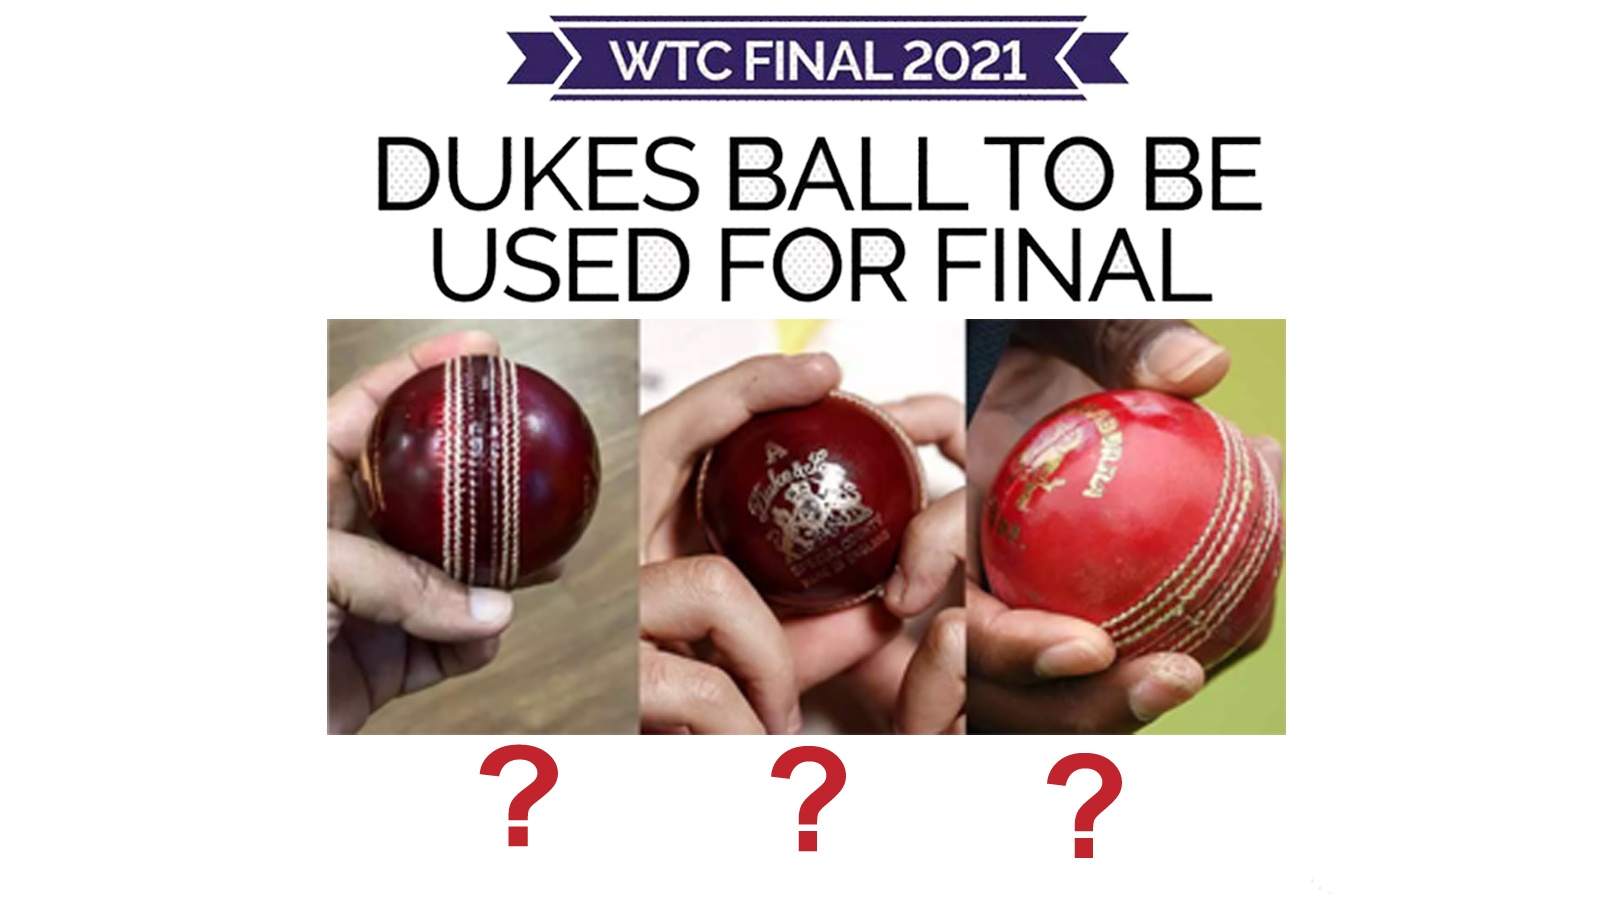 इंग्लैंड में घूमती ड्यूक बॉल भारतीय बल्लेबाजों के लिए चुनौती साबित होगी. इसे समझने के लिए बल्लेबाजों को सावधान रहने की जरूरत है. क्रिकेट के एक्सपर्ट्स के मुताबिक ड्यूक बॉल (Duke Ball) मैच में पारी की शुरुआत से ही स्विंग लेने लगती है.